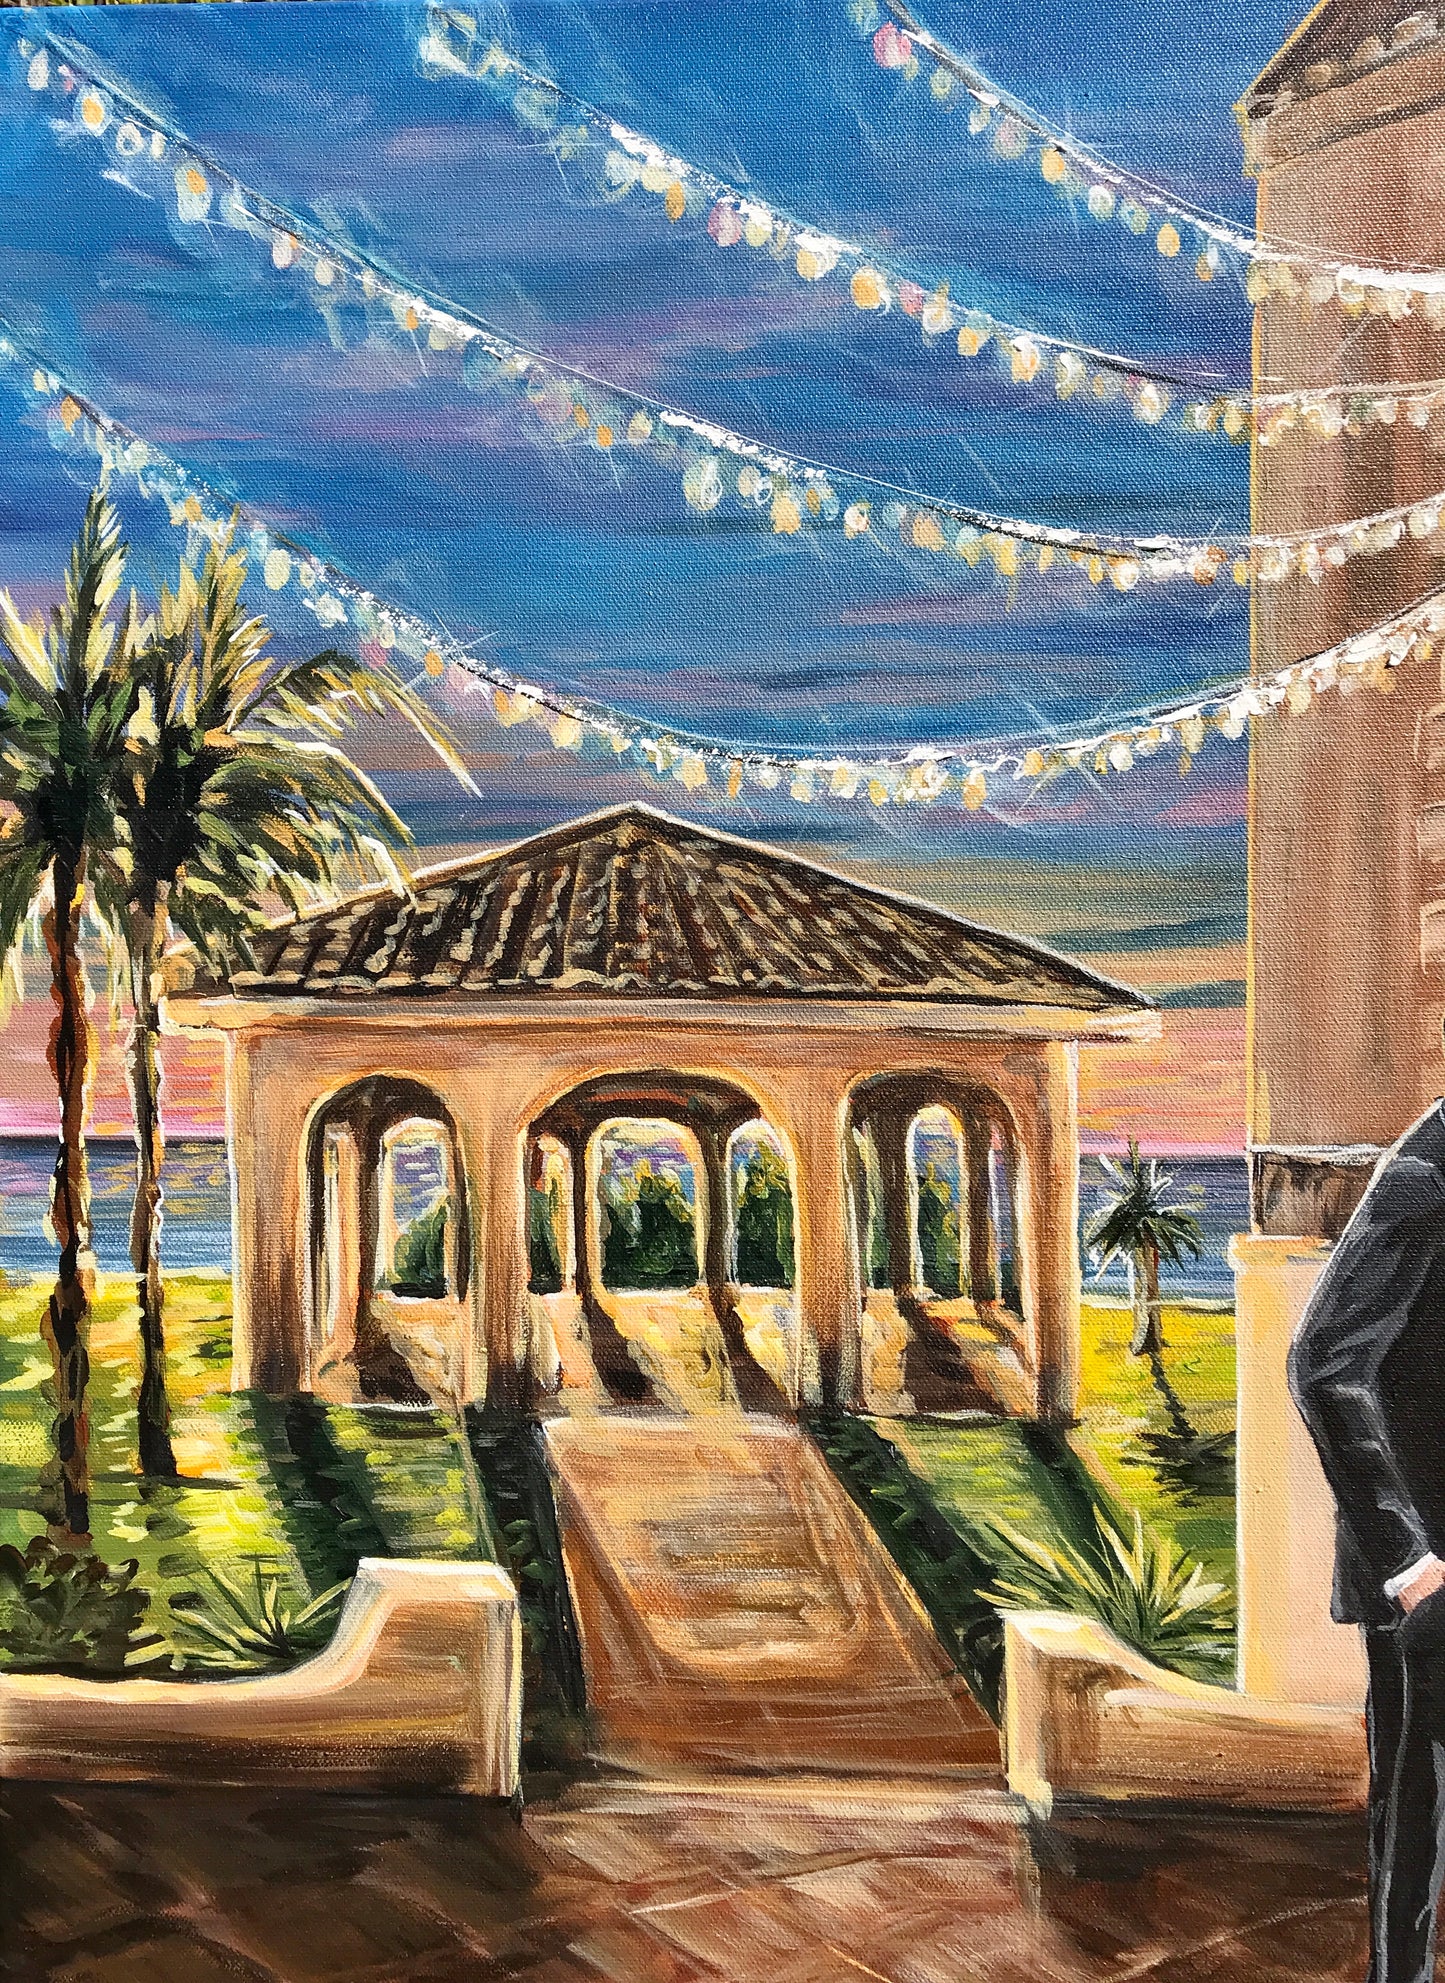 Sarasota Florida Live Wedding Painter 2022